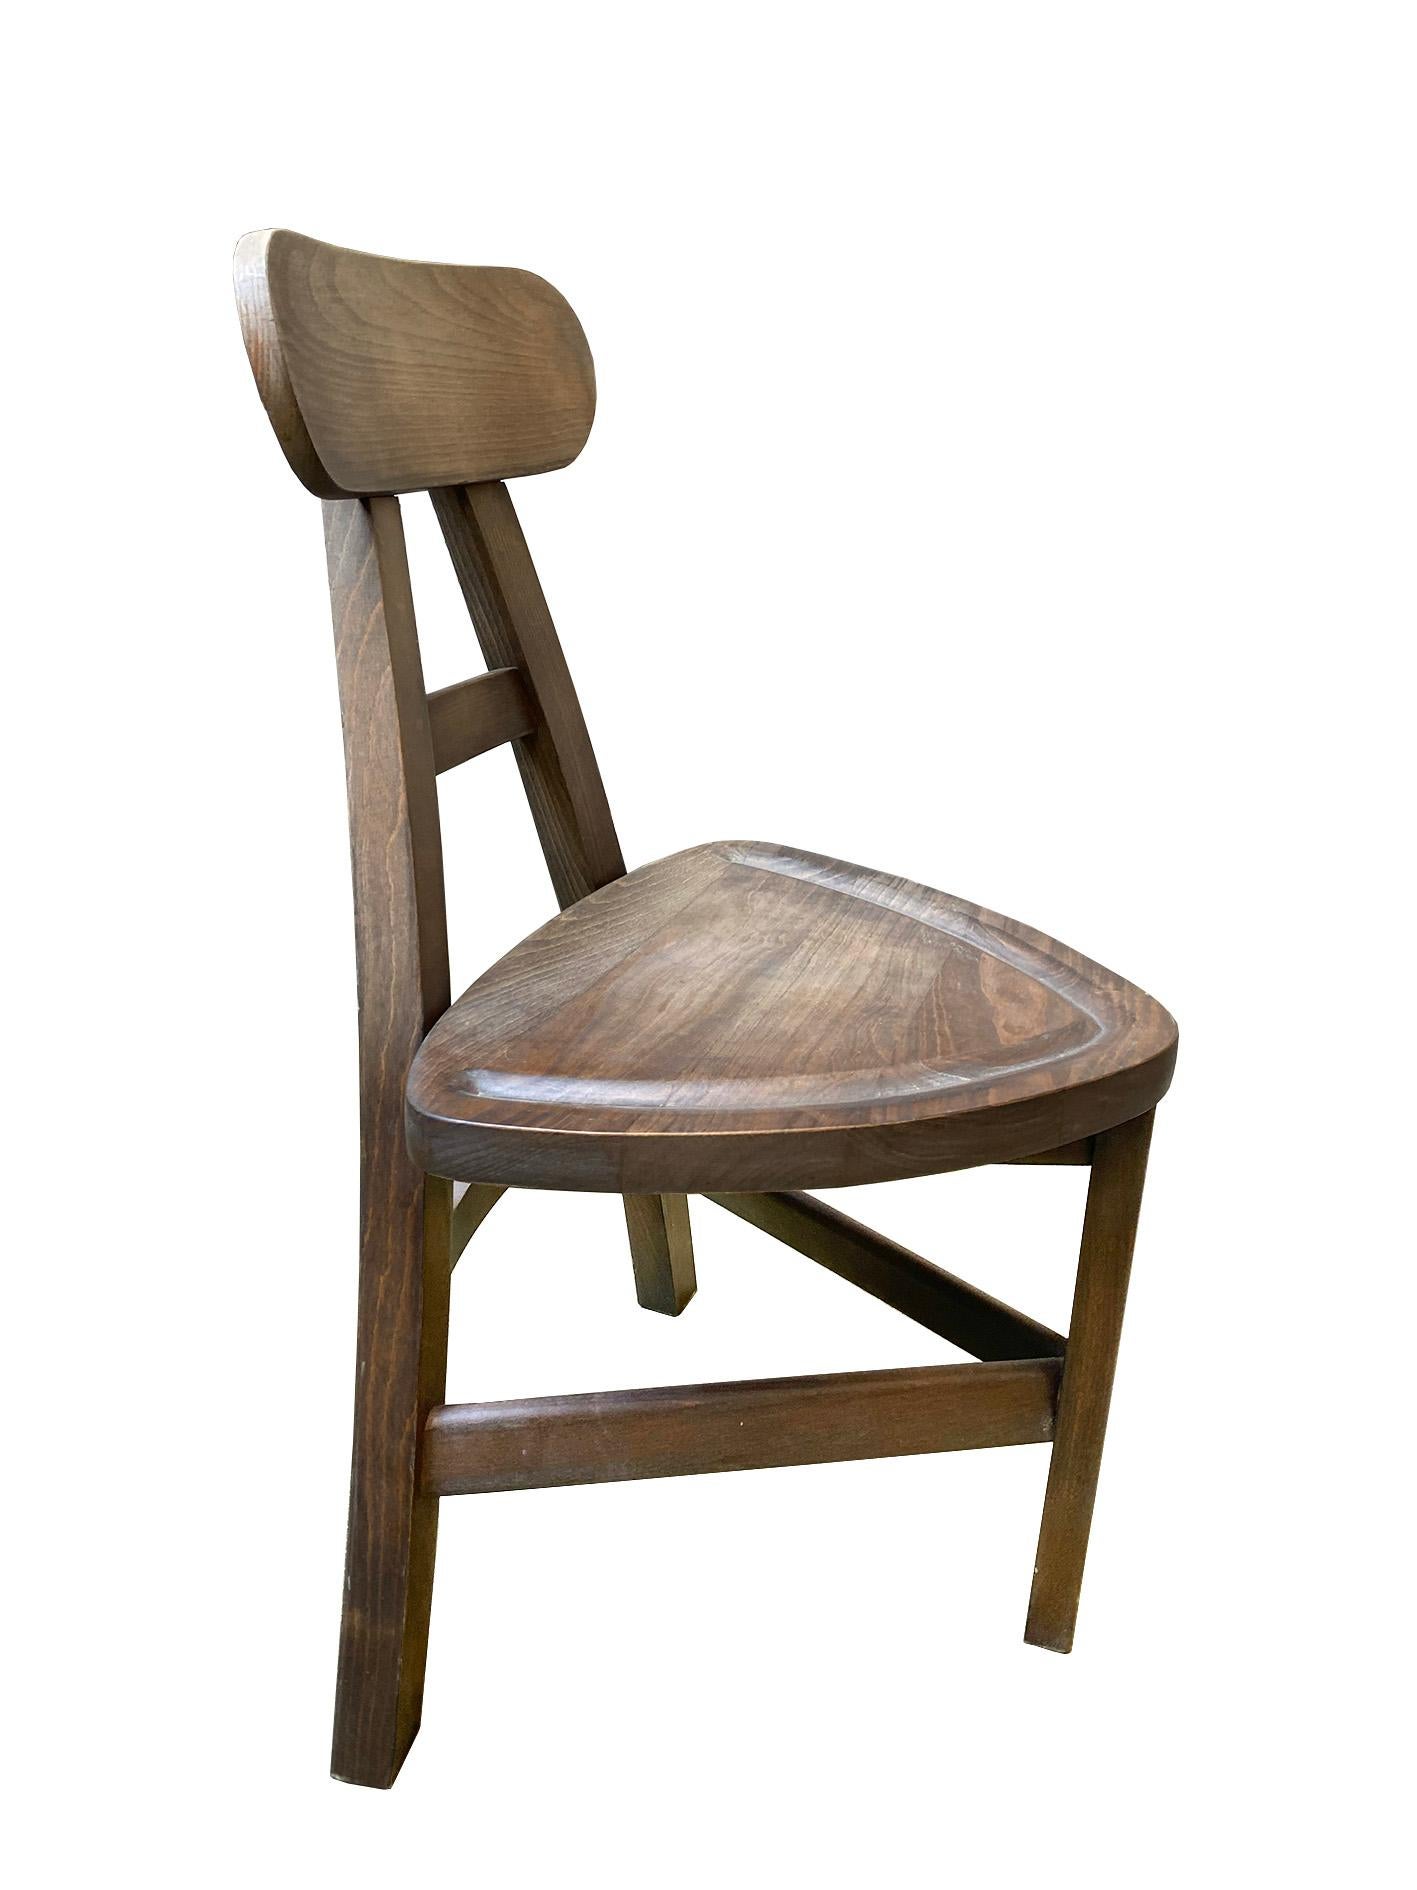 Diese charmanten dreibeinigen Stühle aus Buche im Folklorestil verkörpern eine zeitlose Ästhetik, die mühelos die Brücke zwischen rustikaler Schlichtheit und dauerhafter Handwerkskunst schlägt. Diese mit Sorgfalt und Liebe zum Detail handgefertigten